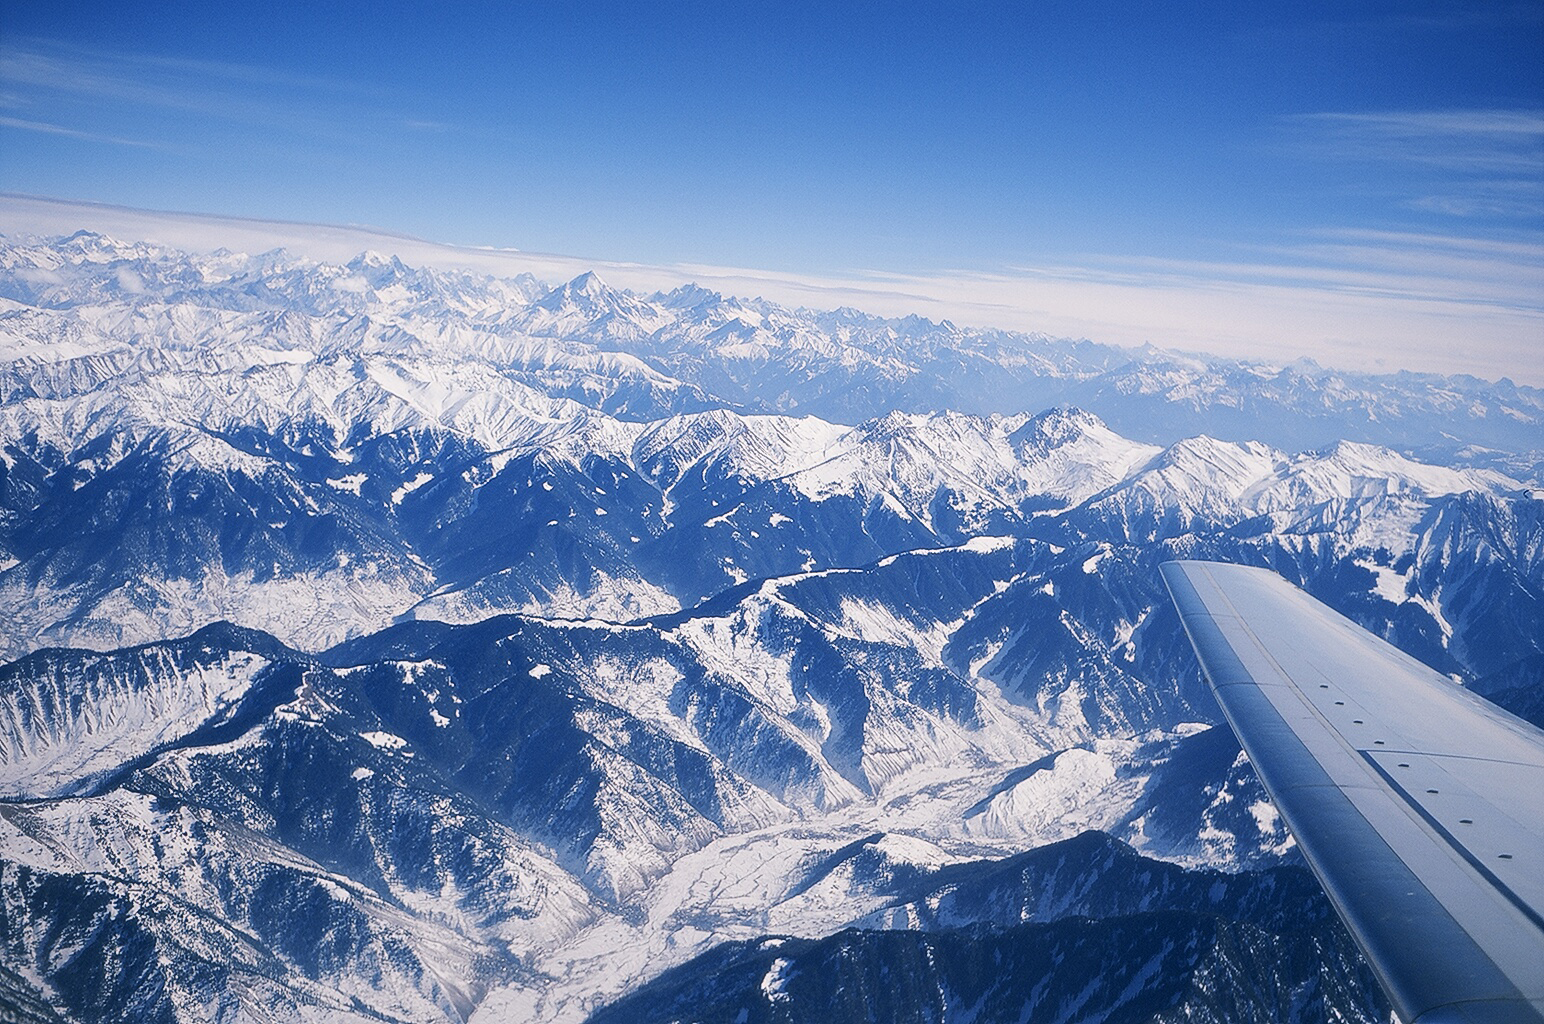 Utsikt frn flygplanet nr vi flyger in mot Srinagar r fantastisk, hr kan vi se stora delar av Himalaya.    Foto: Ptor Spricenieks, skiherenow@yahoo.com 